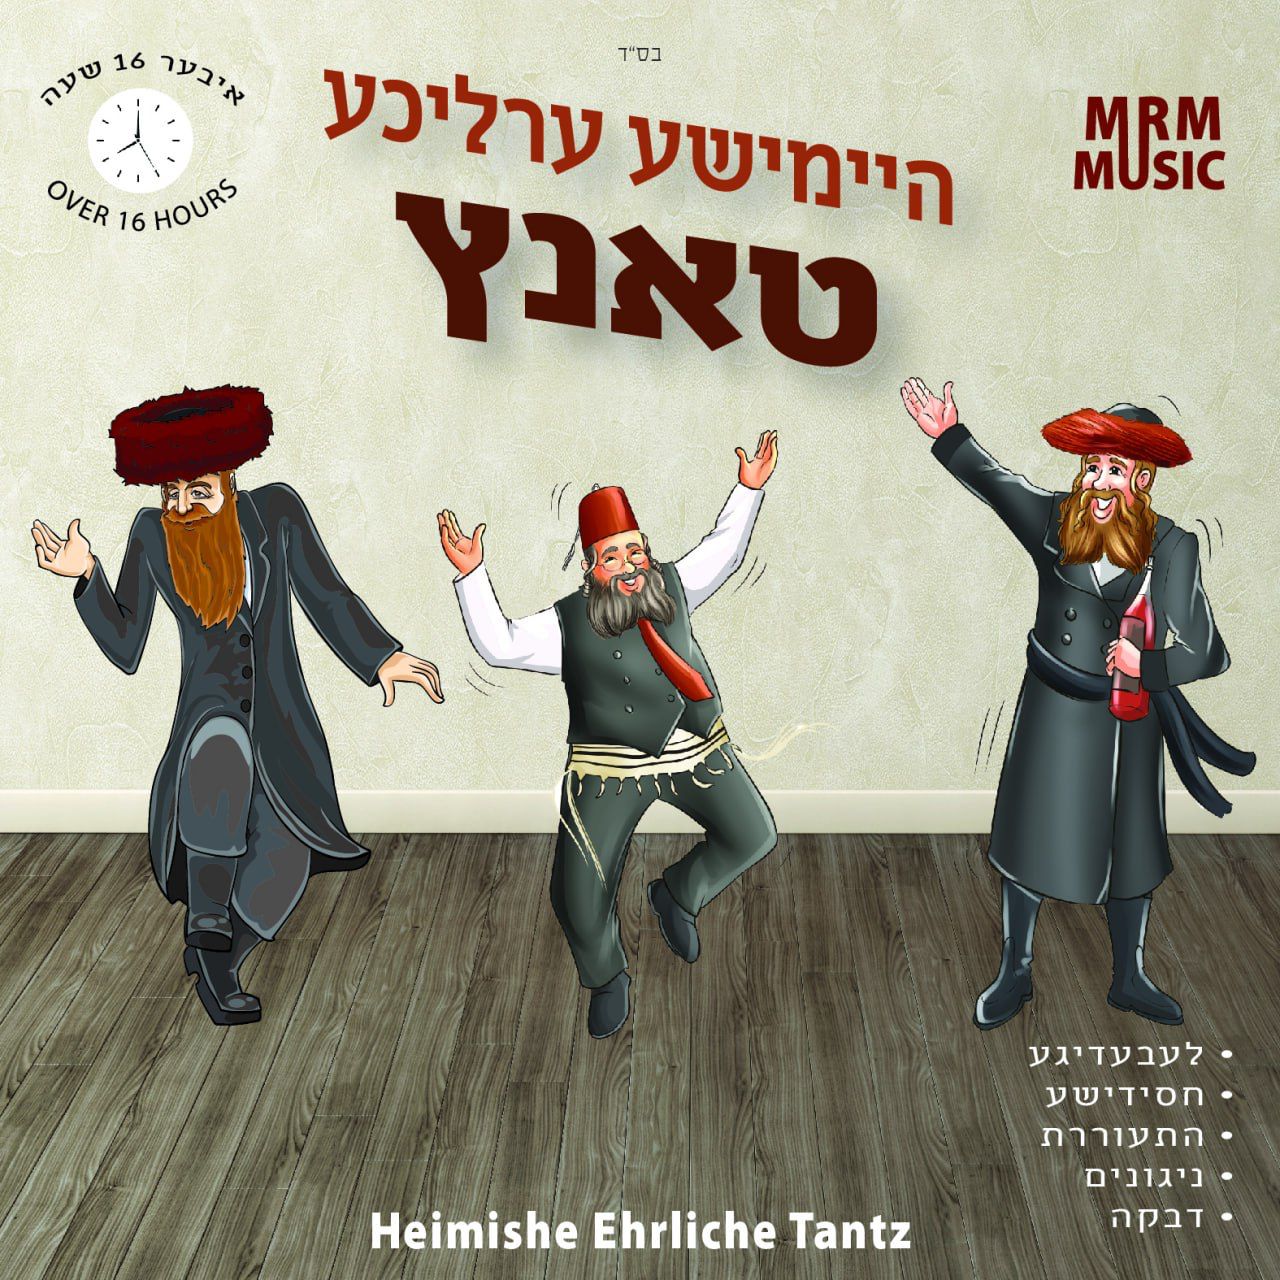 MRM Music - Heimishe Ehrliche Tantz